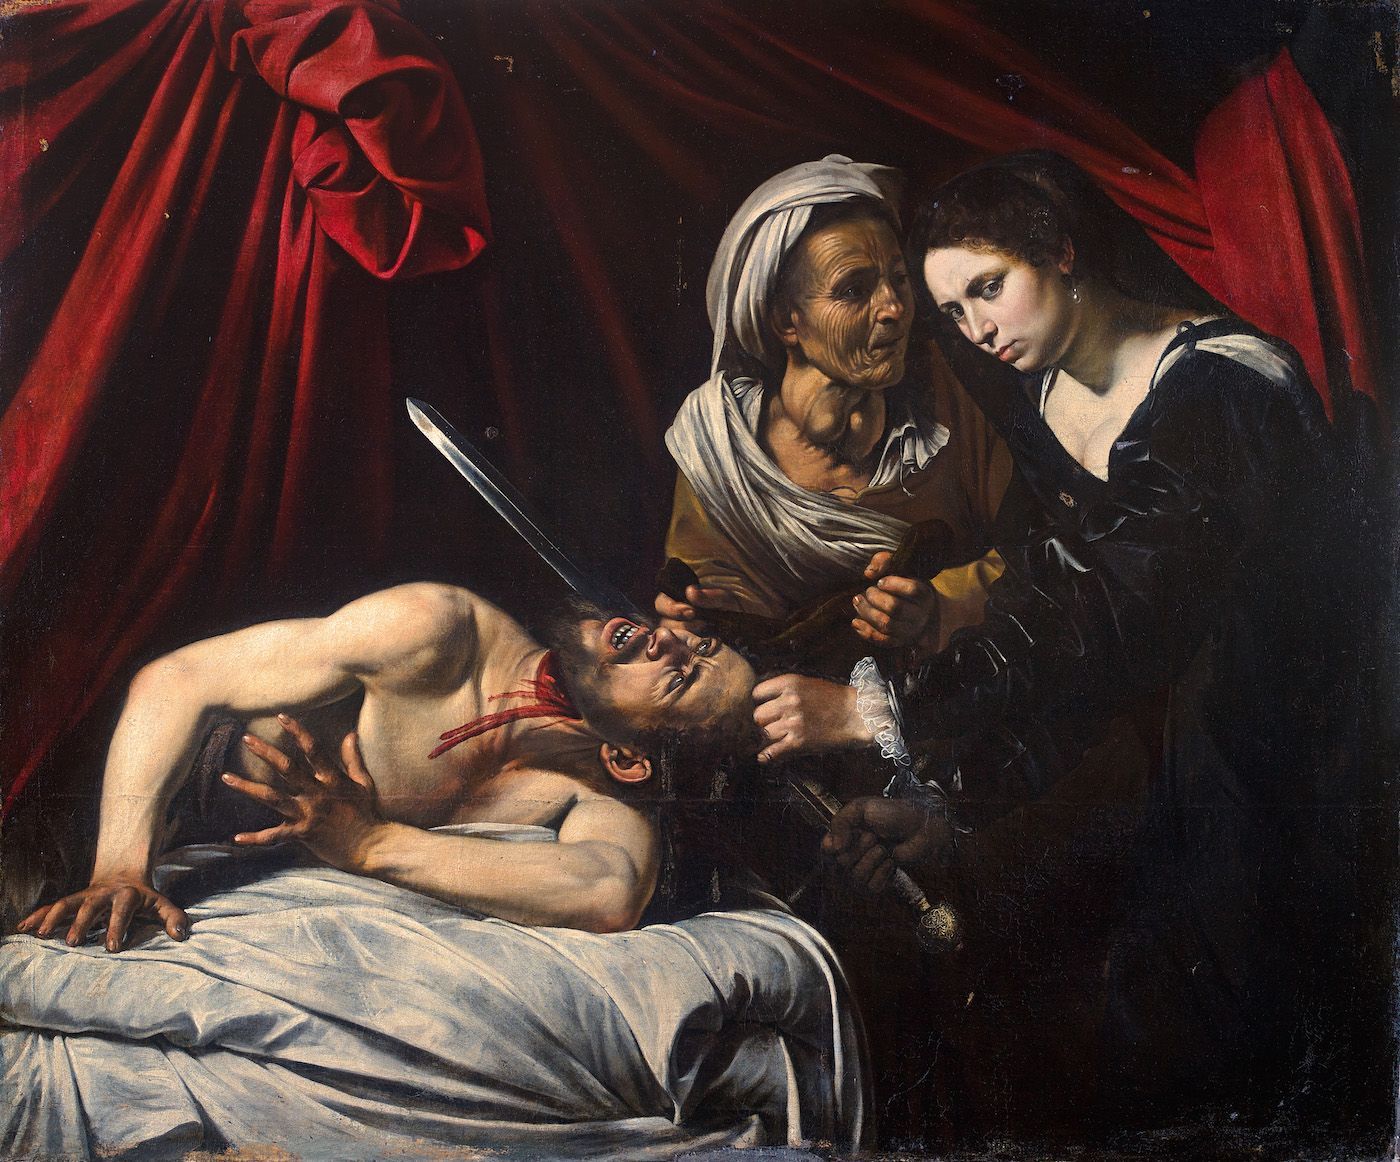 Giuditta e Oloferne di Caravaggio in mostra a Milano: a Brera dal 10 novembre al 5 febbraio 2017